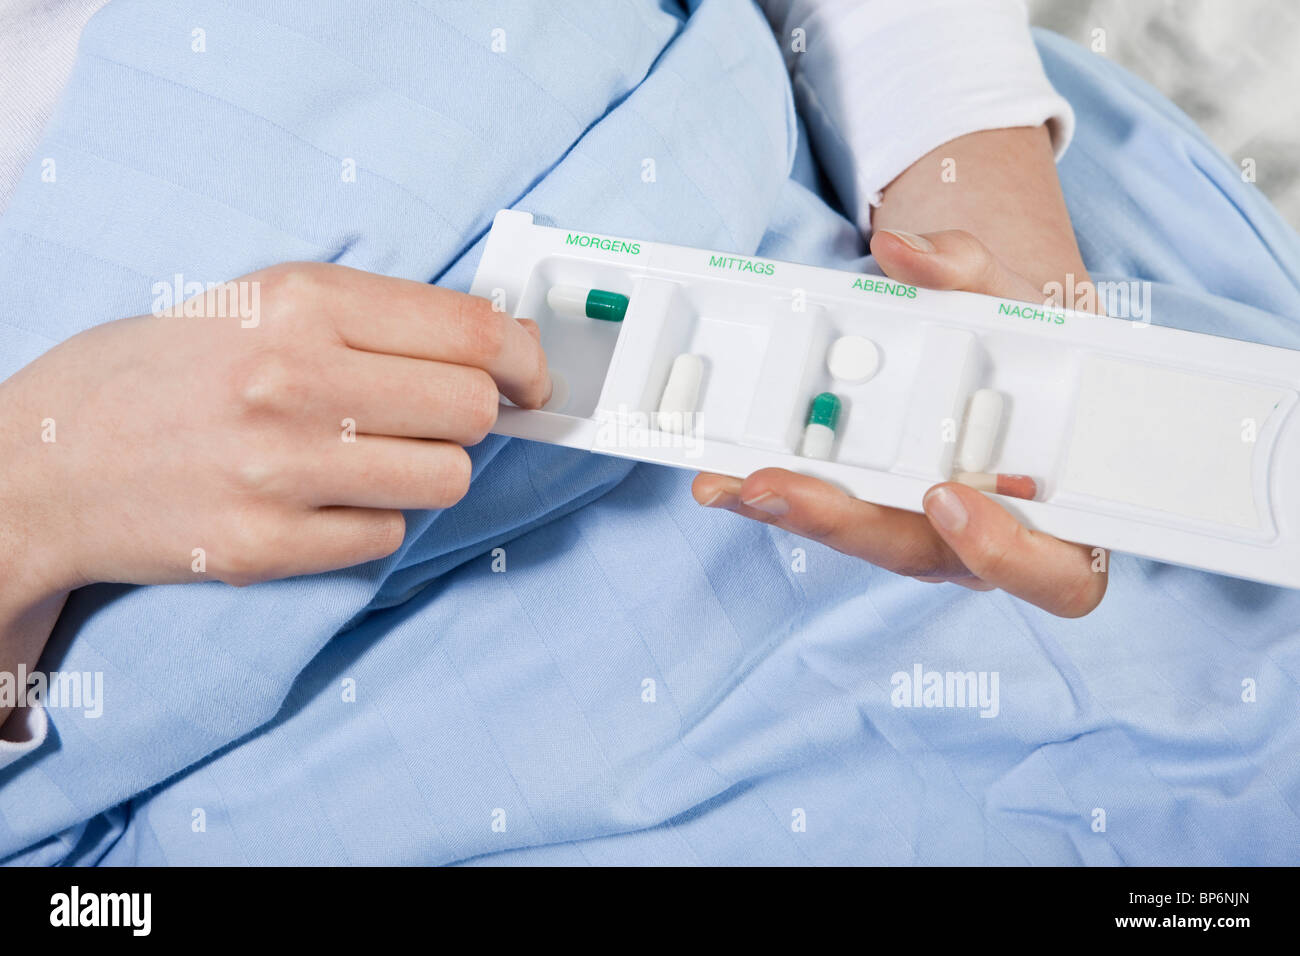 Un patient dans un lit d'hôpital à prendre une pilule d'un comprimé organisateur, se concentrer sur les mains Banque D'Images